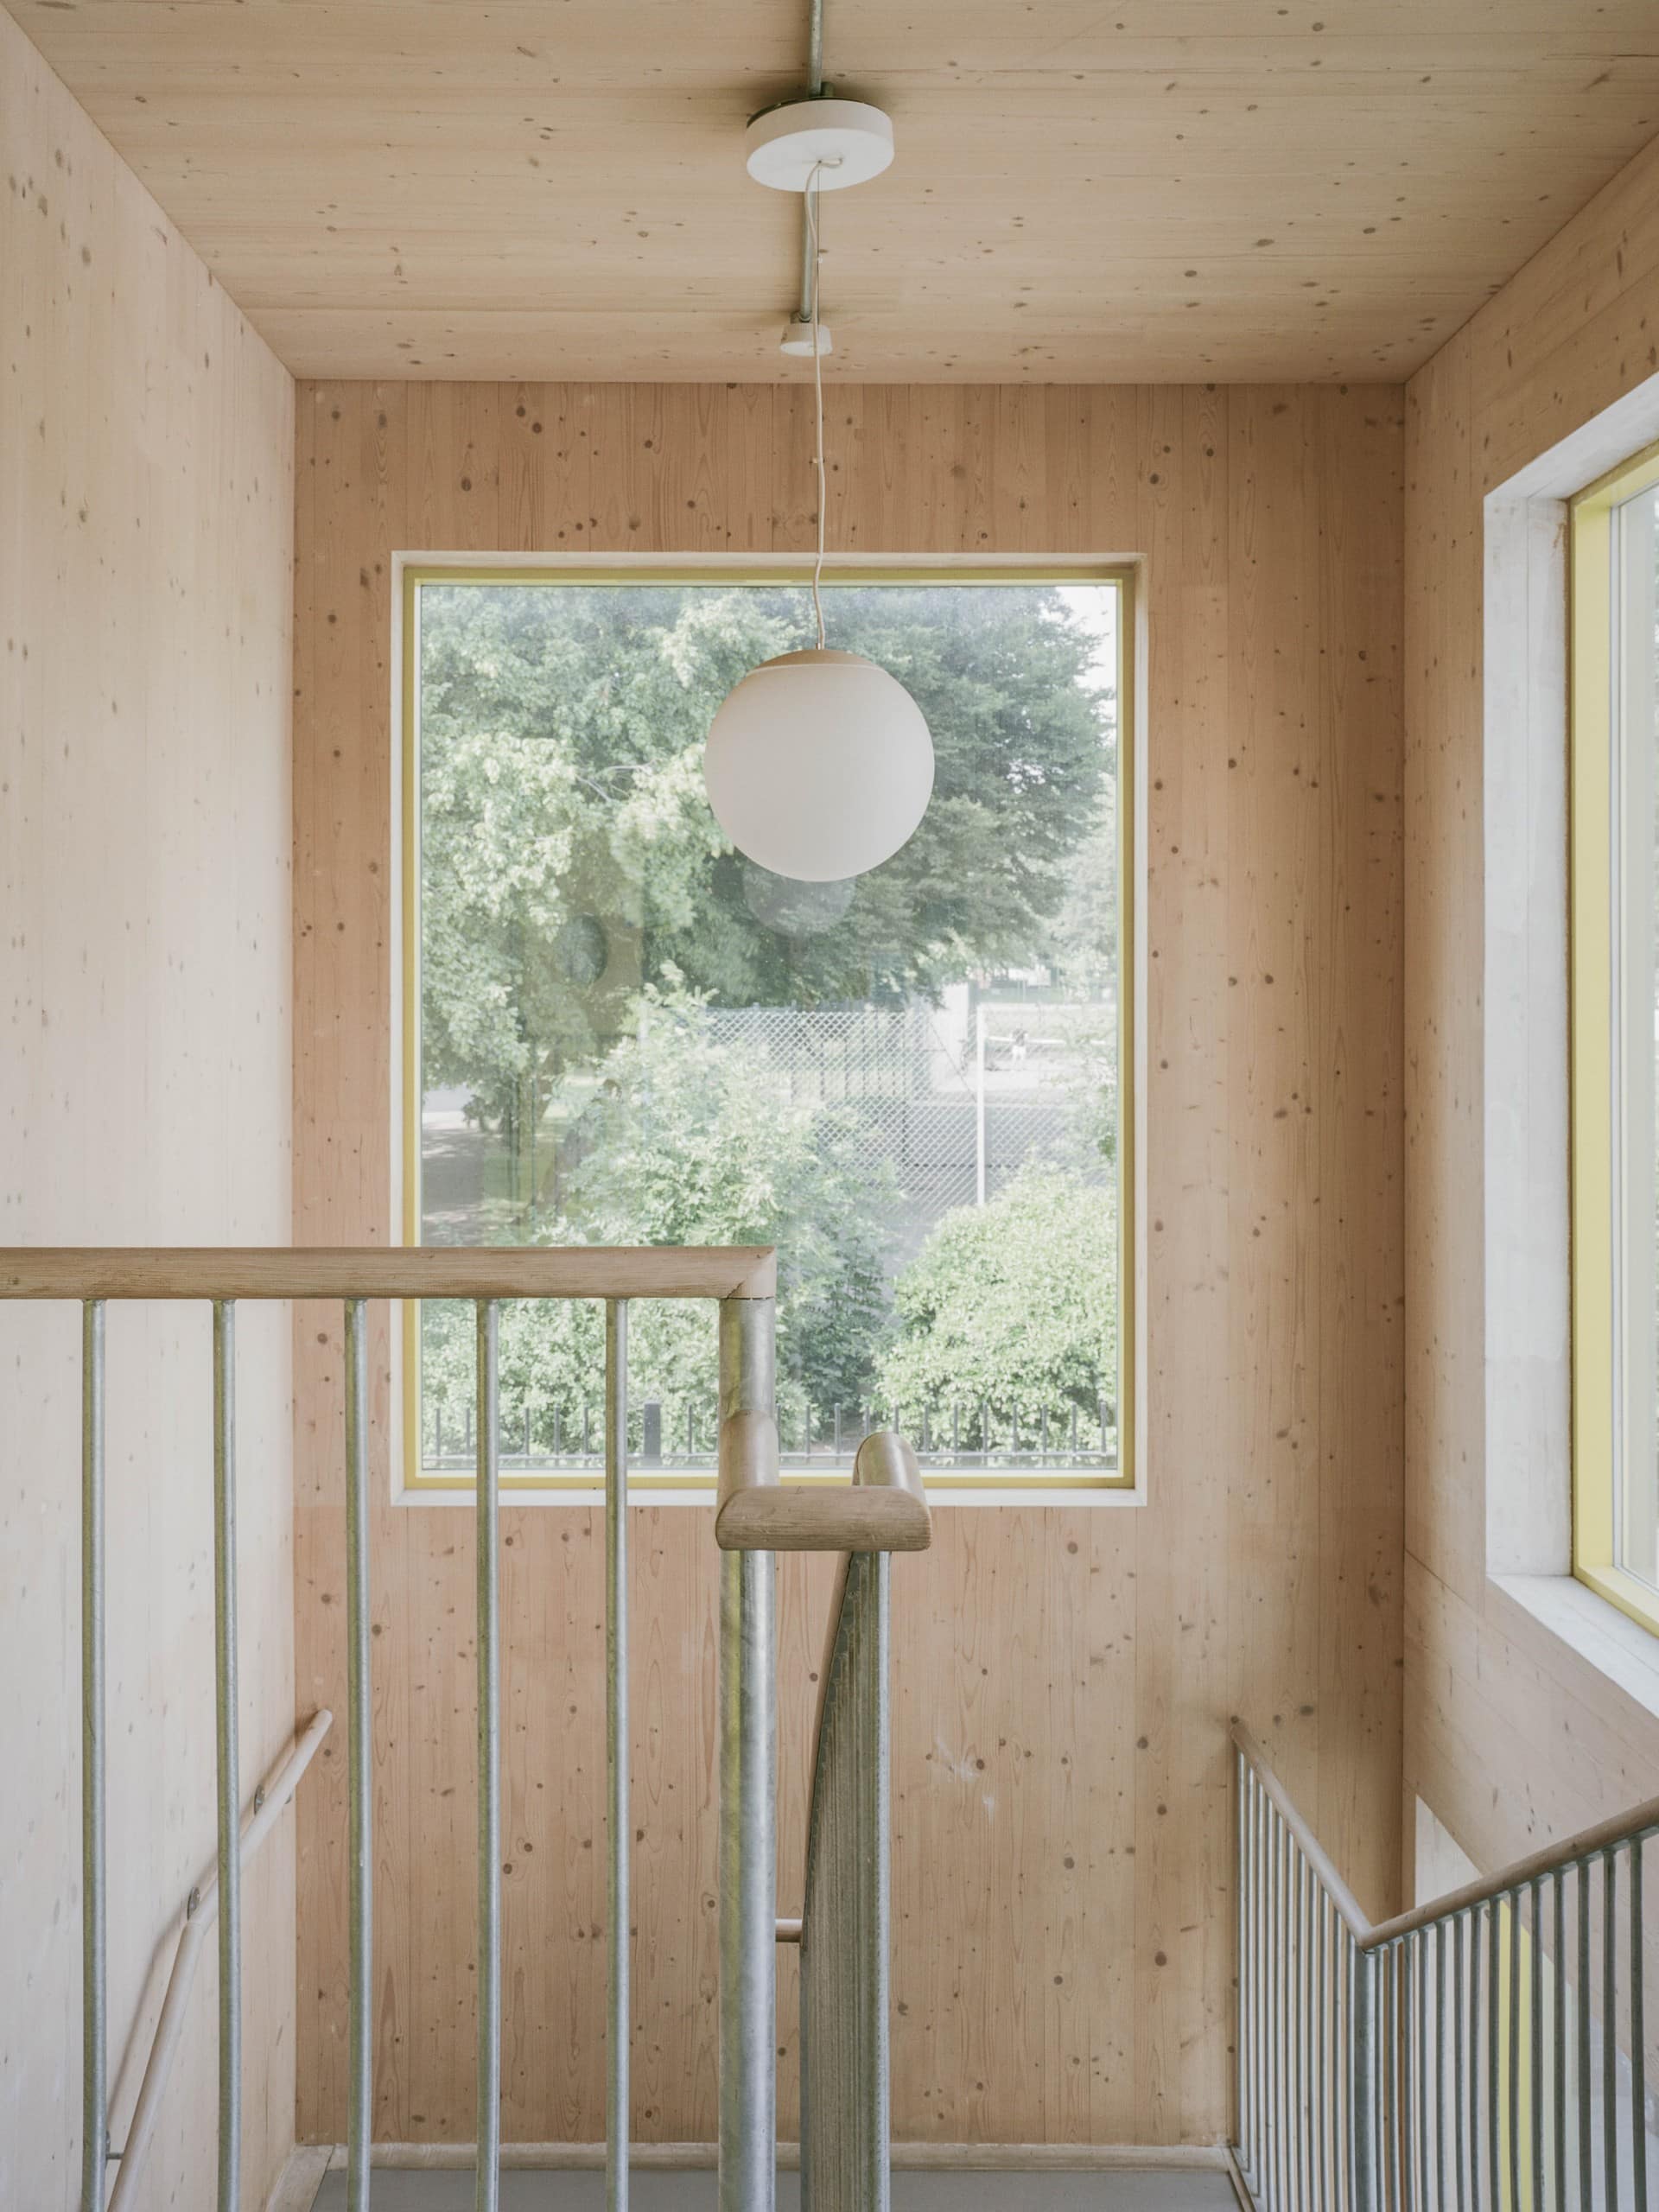 Blick in ein Treppenhaus, Wände und Decke aus hellem Holz, metallene Treppengeländer mit senkrechten, dünnen Stäben, große Fenster in den Wänden, von der Decke hängt eine kugelförmige, weiße Lampe herunter. Foto: Lorenzo Zandri